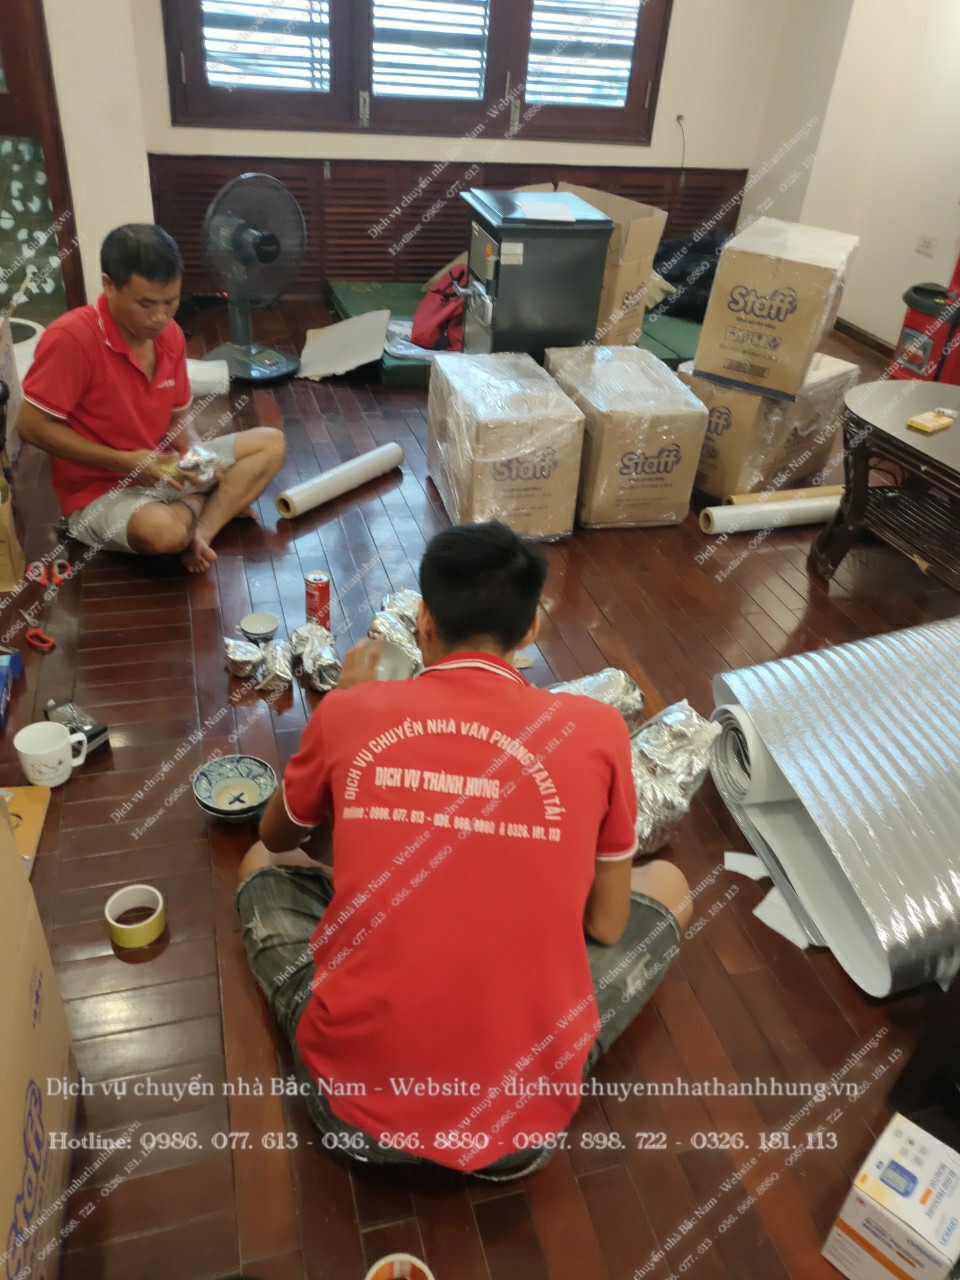 Dịch vụ chuyển nhà trọn gói tại Hà Nội Thành Hưng